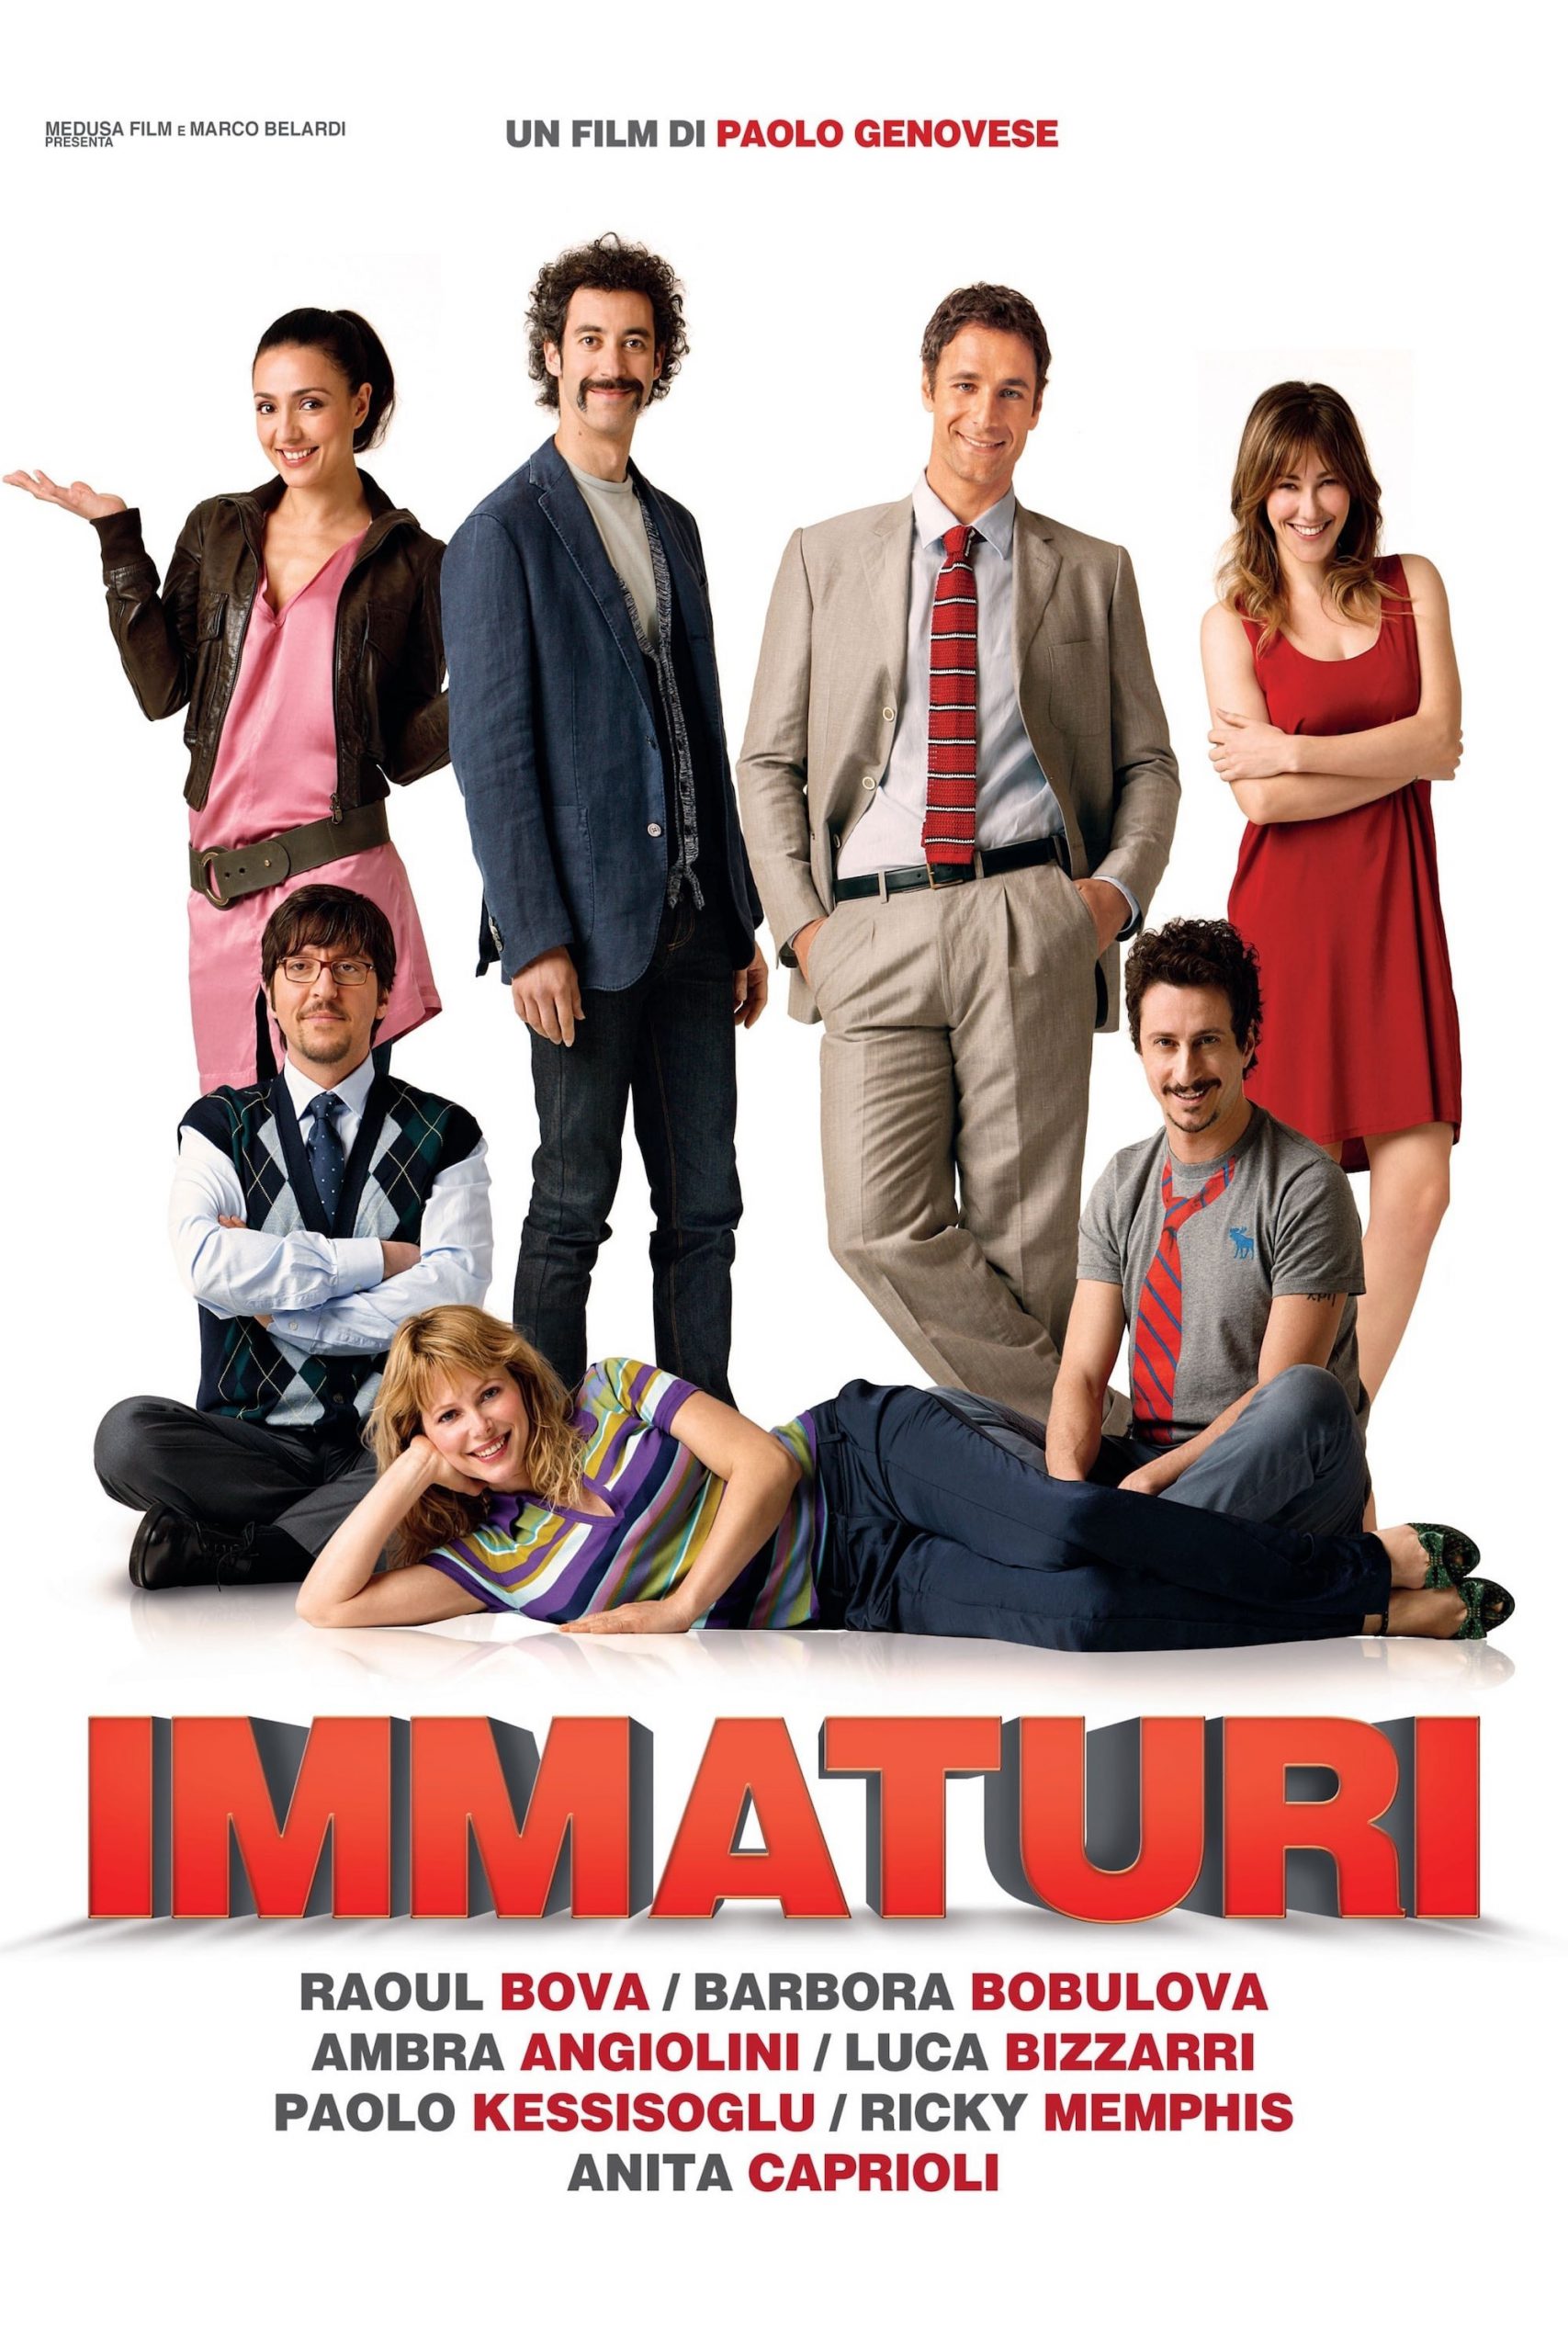 Immaturi [HD] (2011)